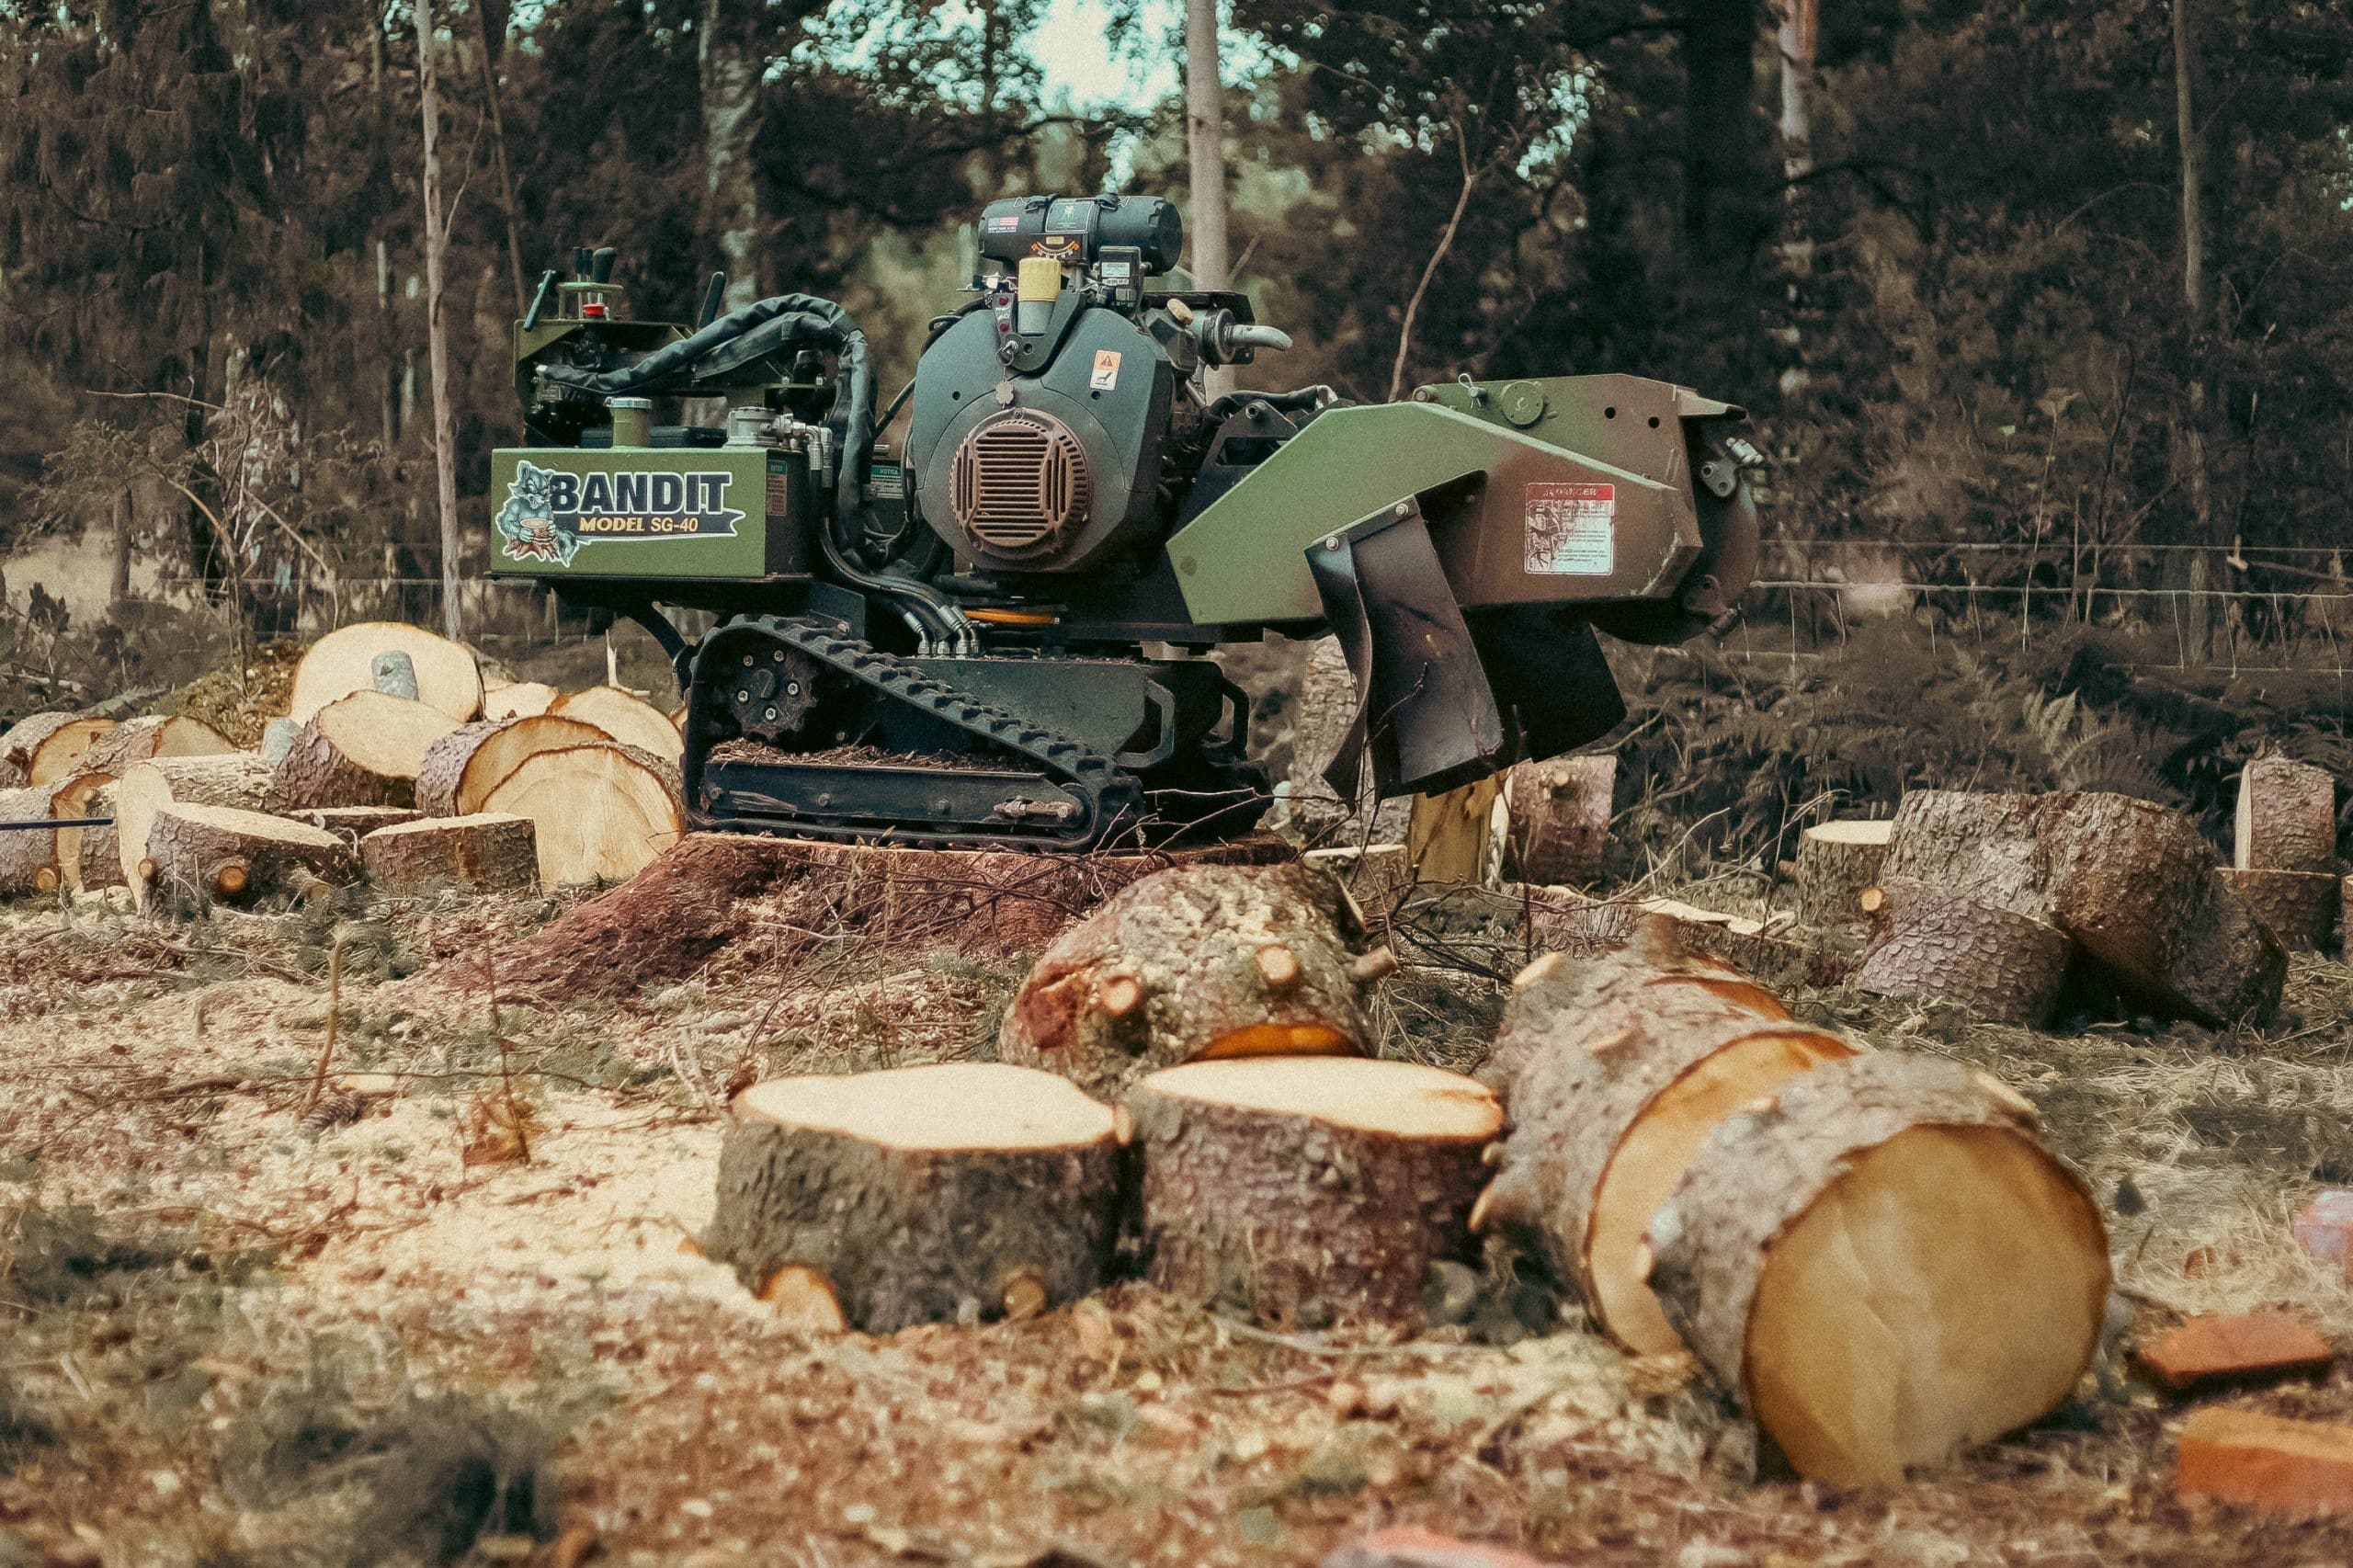 En stubbfräs i arbete, med roterande fräshjul som maler ner en trädstubbe till små bitar. Maskinen är utrustad med en kraftfull motor och är omgiven av trädstammar och grenar.